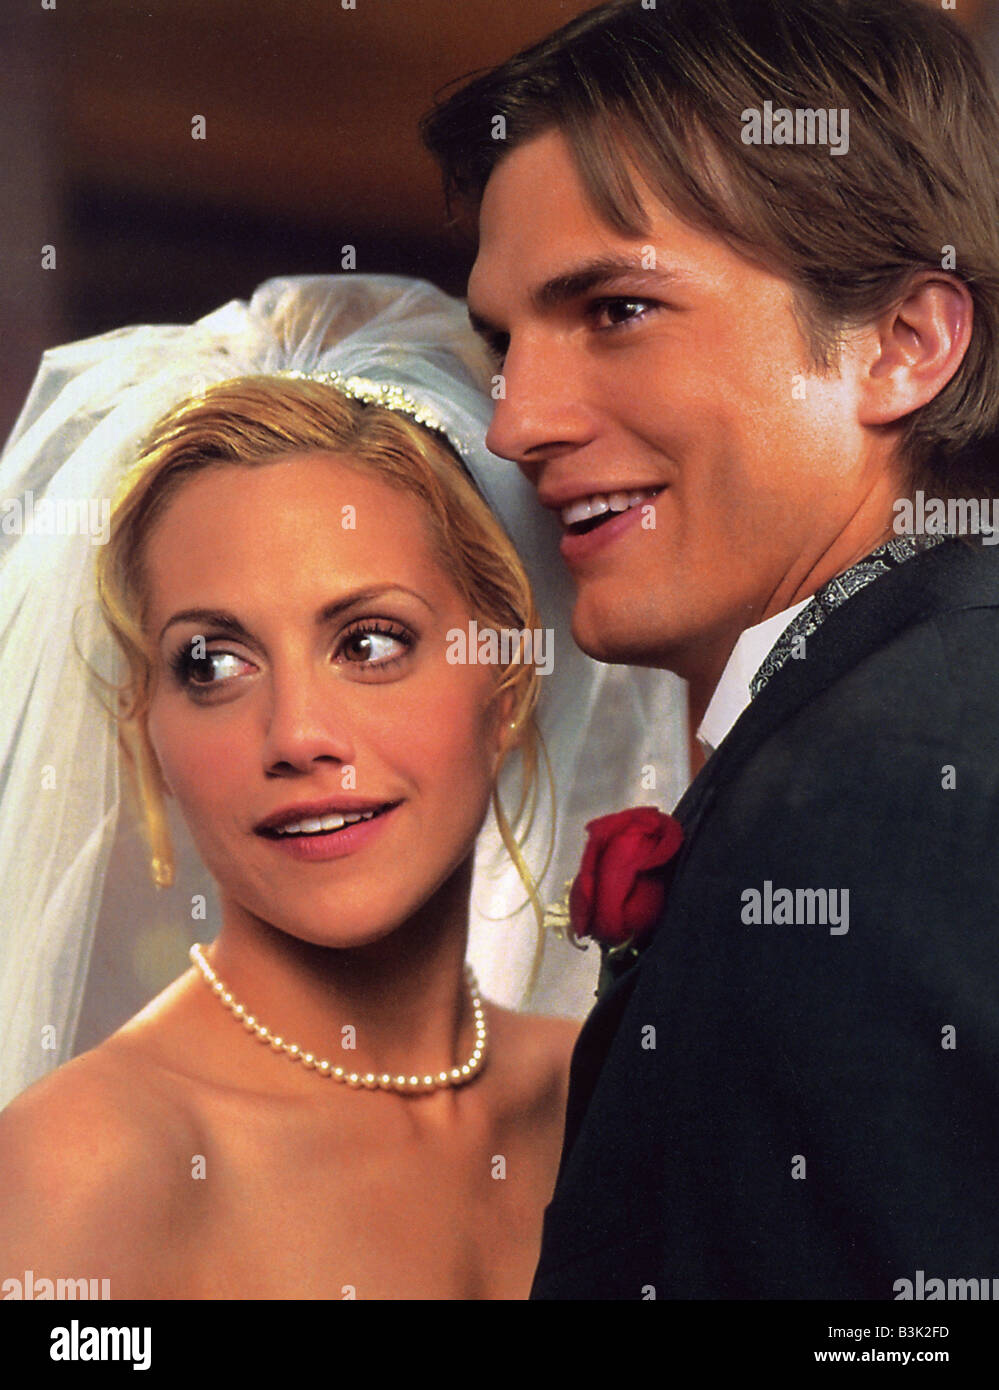 Los Recien Casados 2003 Tcf Pelicula Con Ashton Kutcher Y Brittany Murphy Fotografia De Stock Alamy